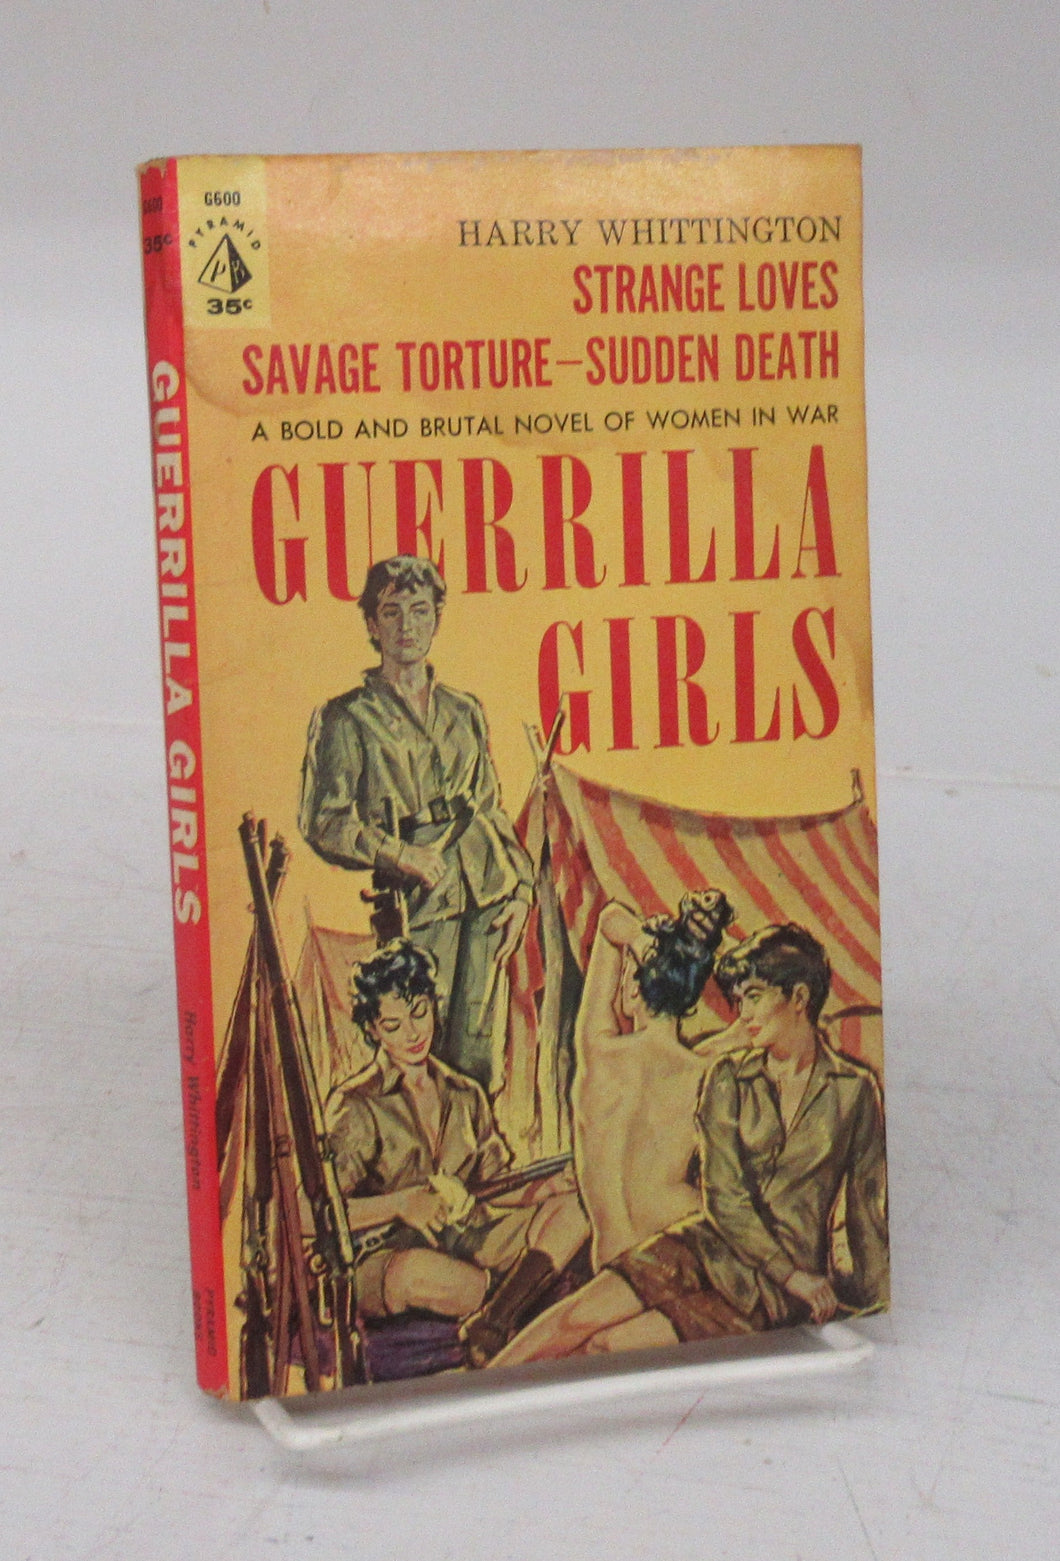 Guerrilla Girls